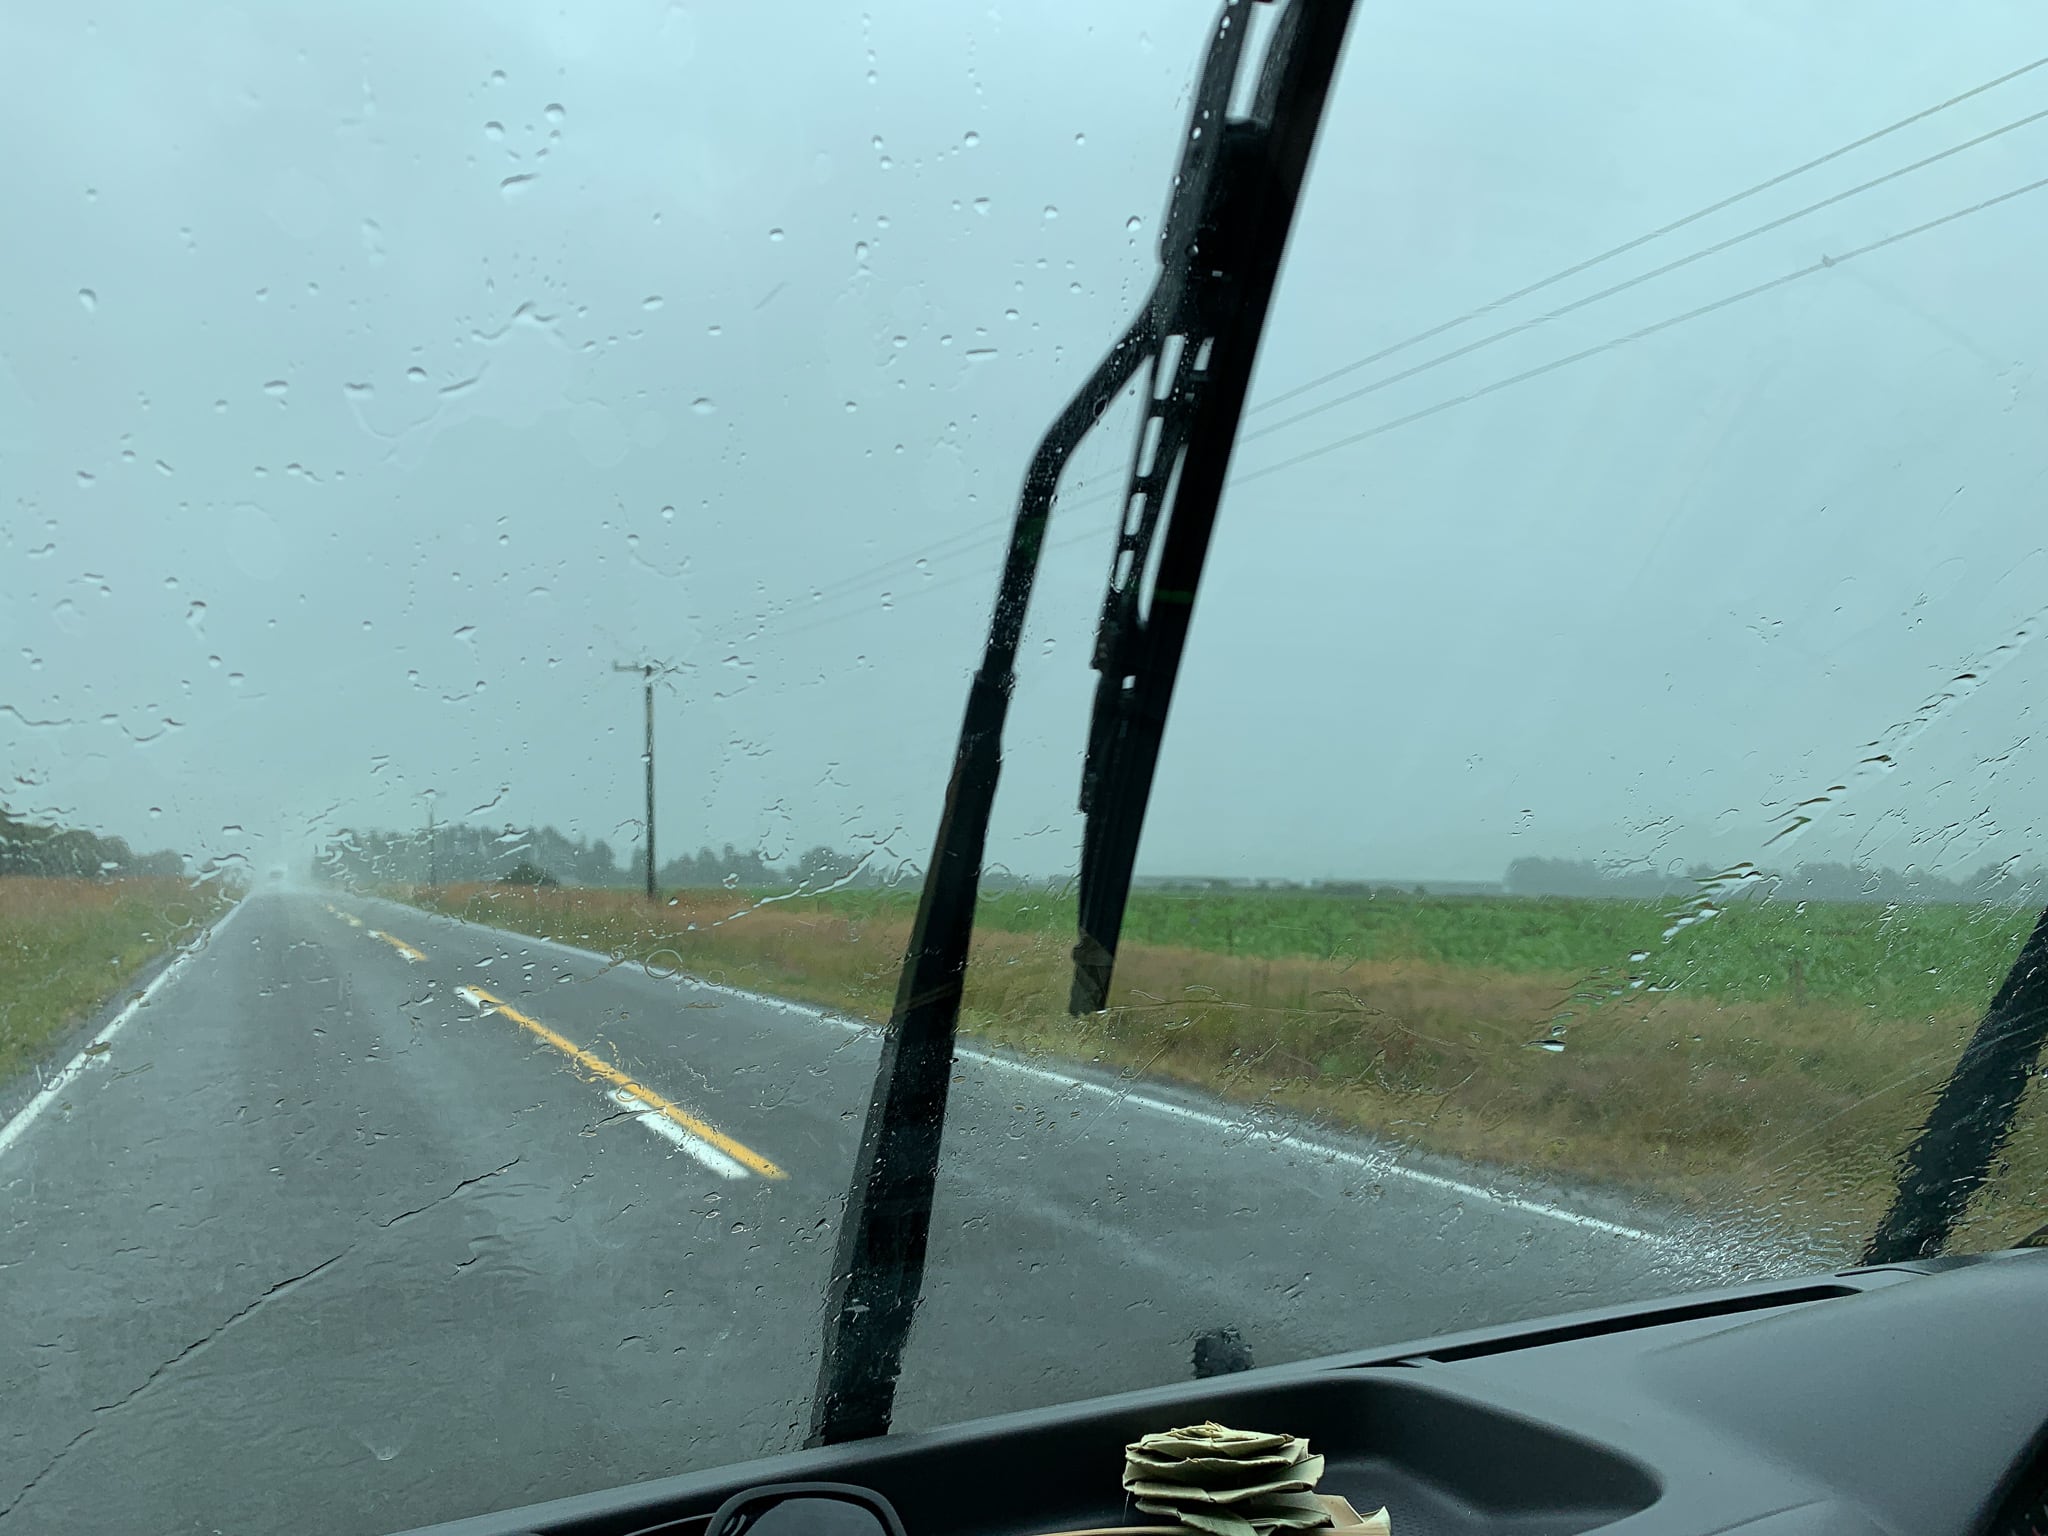 489: A long wet drive